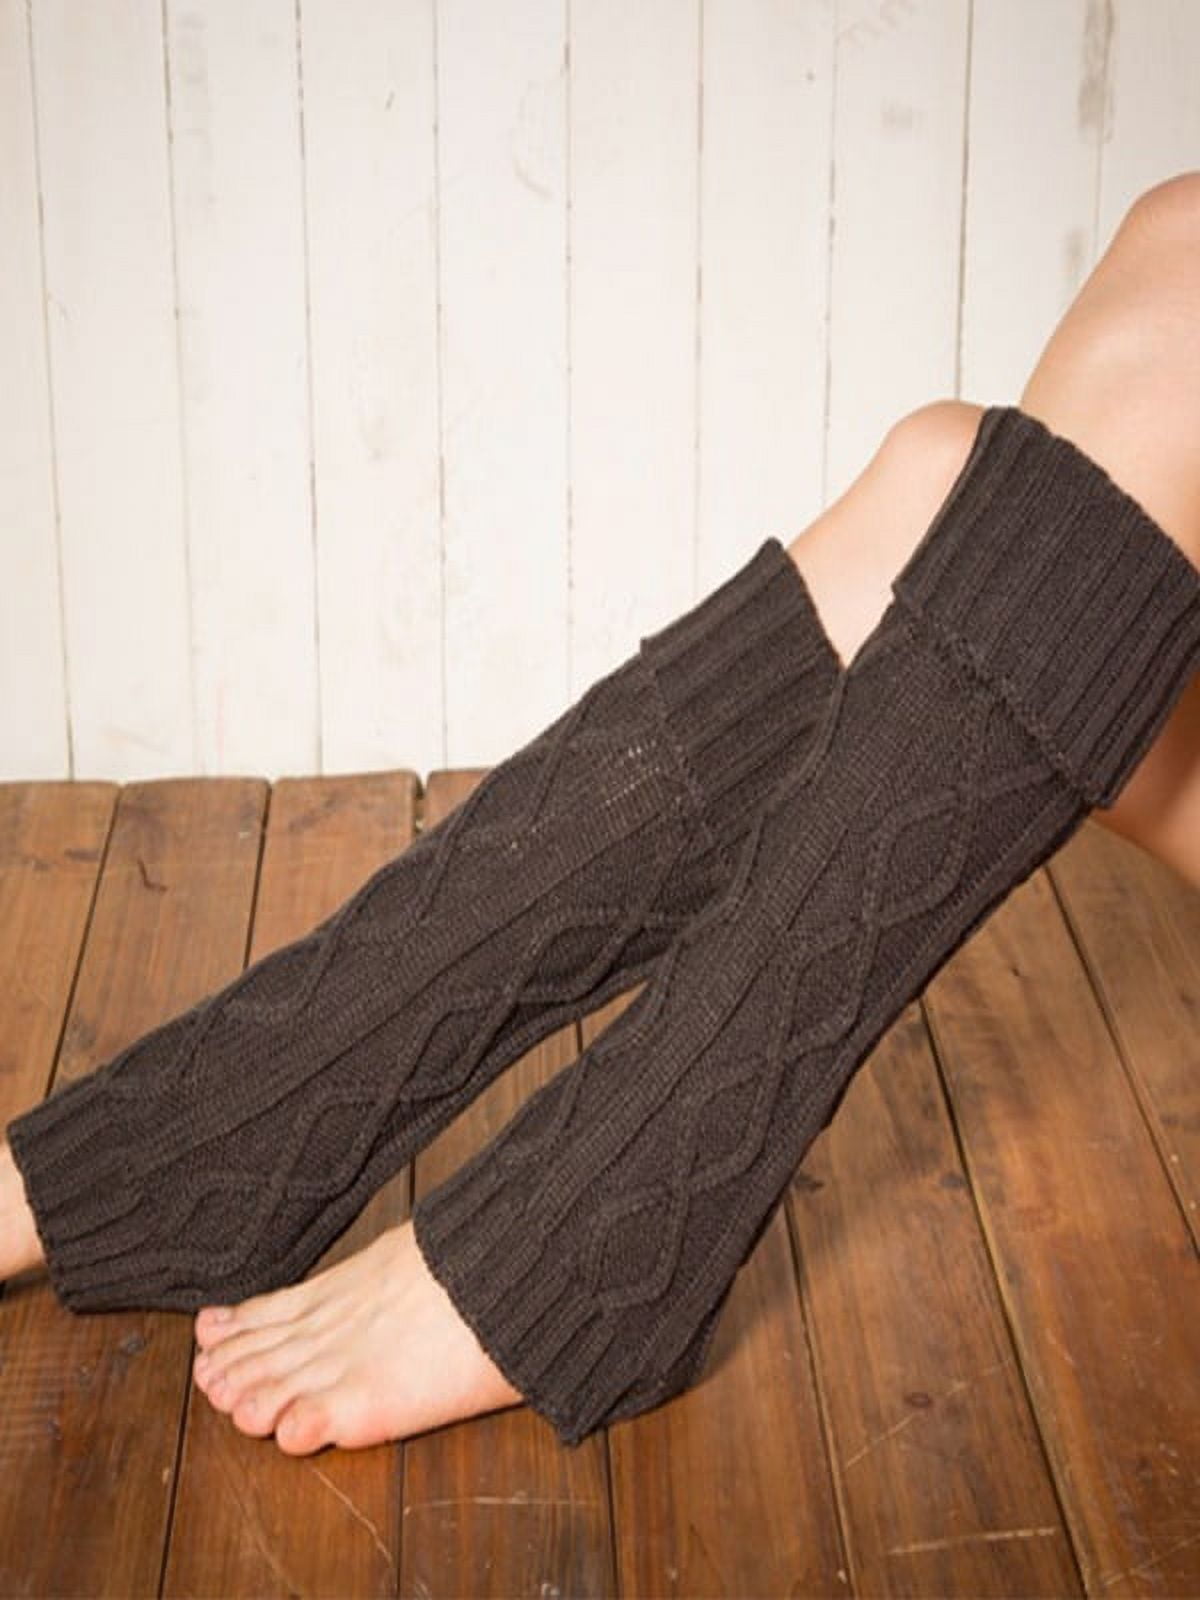 Women's Winter Warm Knitted Leg Warmers High Stockings Long Socks